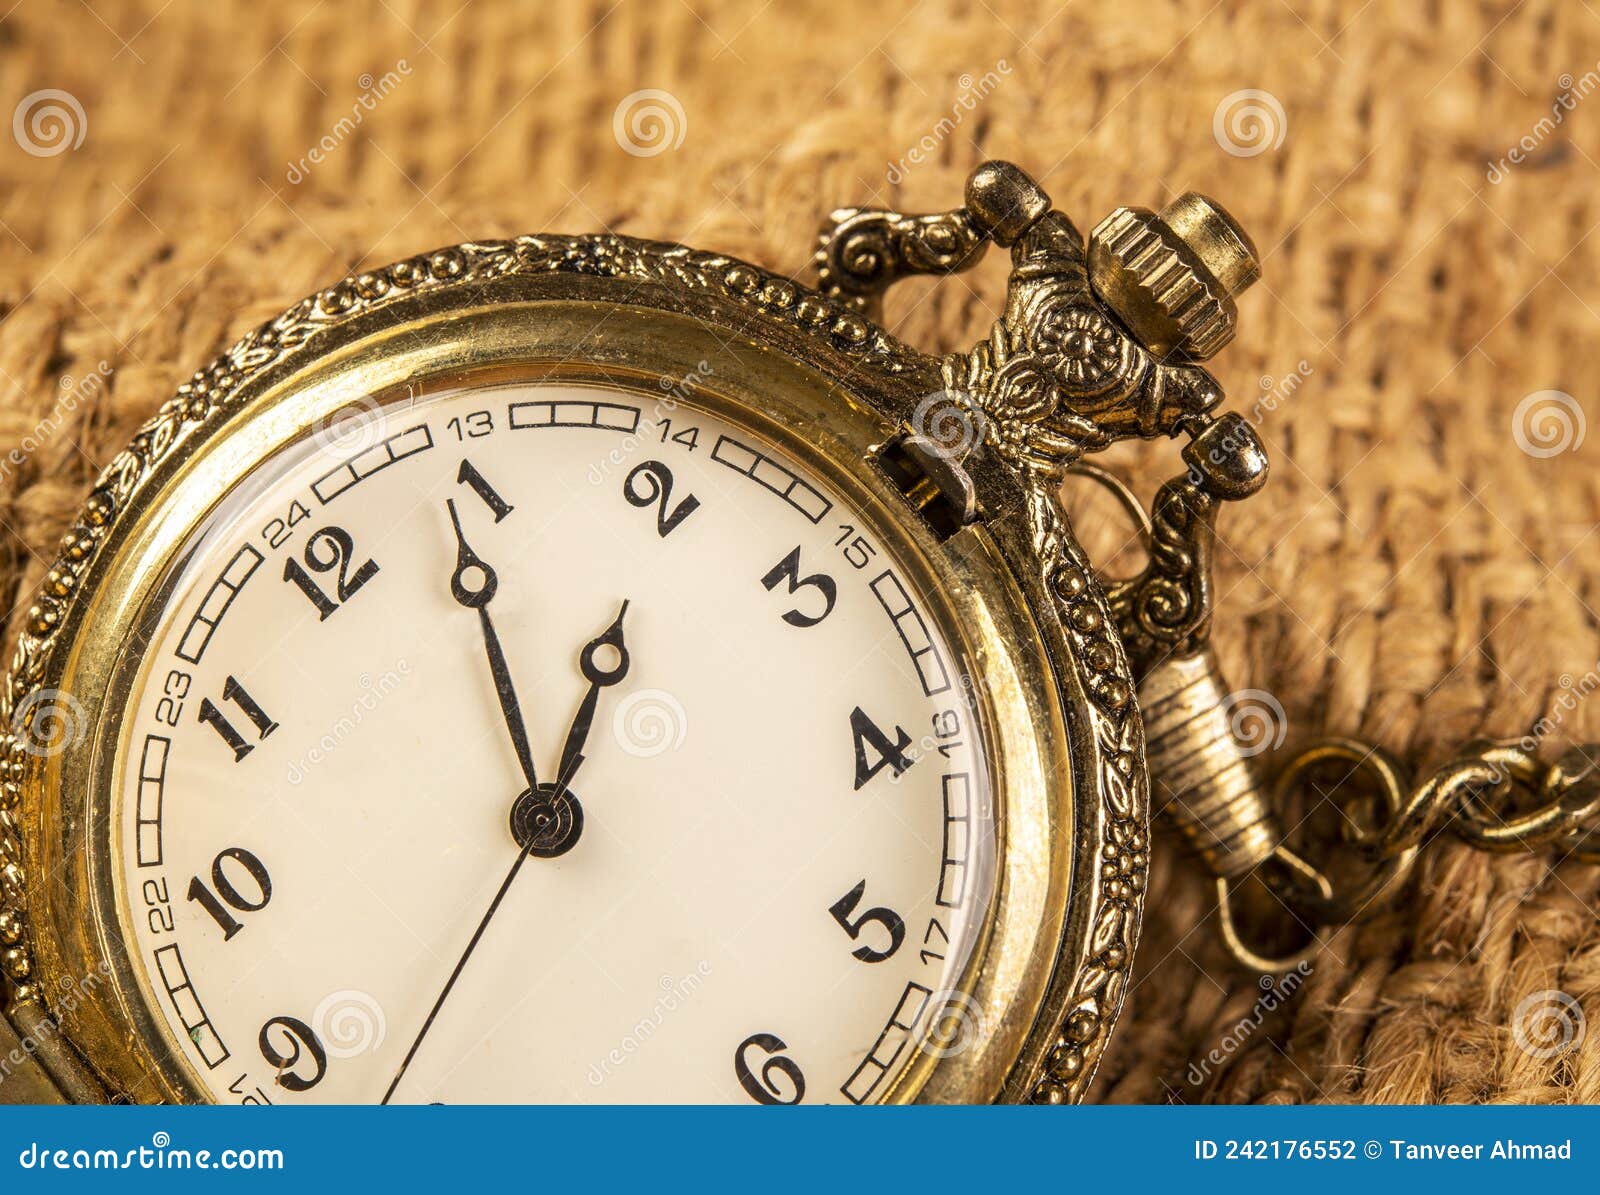 Reloj De Bolsillo Pendiente En El Fondo Del Saco de archivo - Imagen de instrumento: